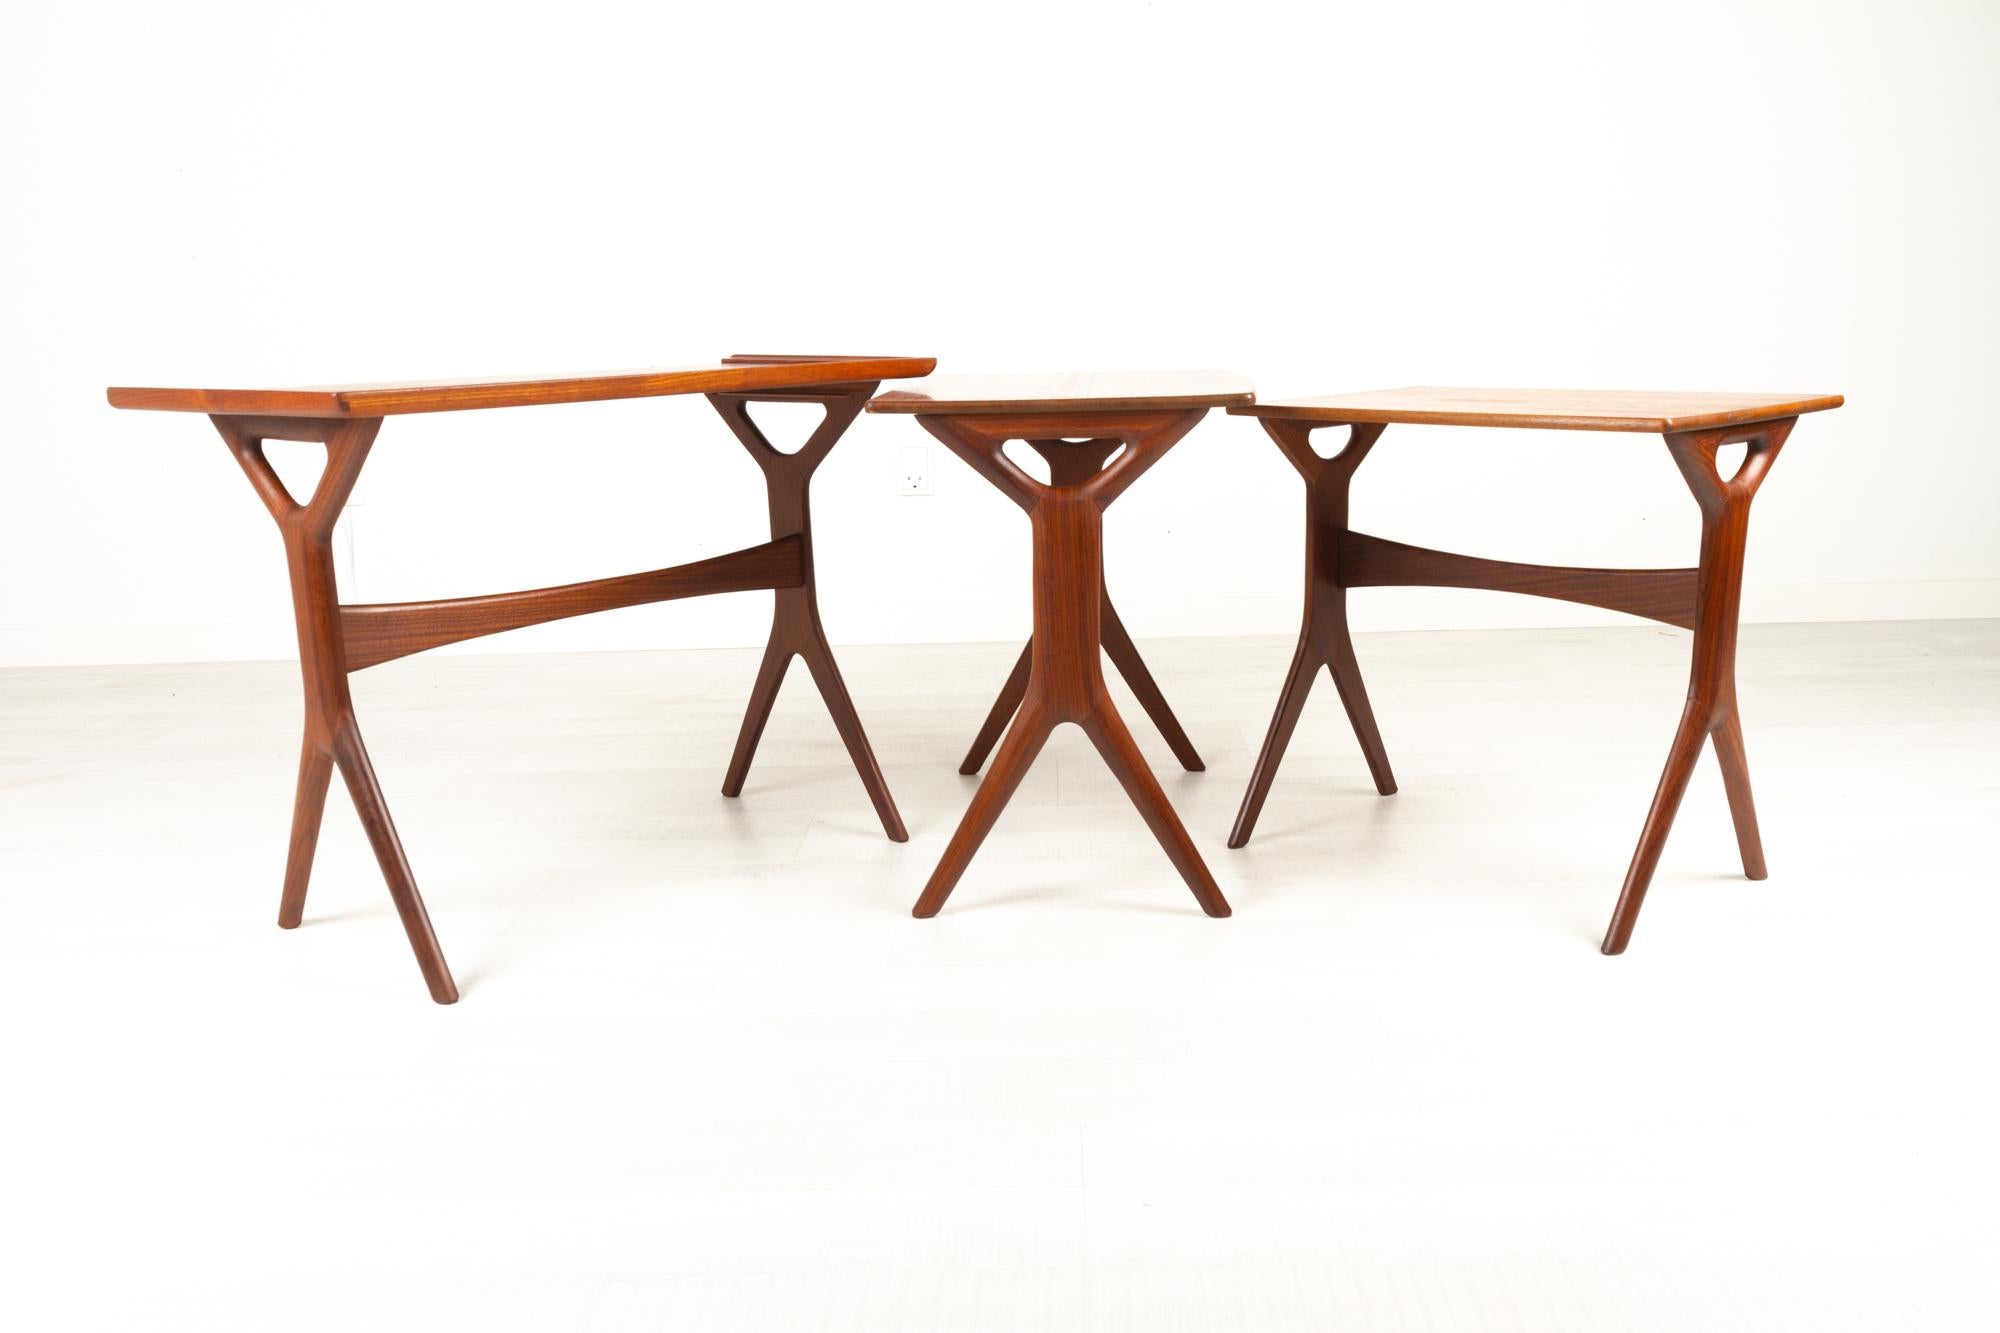 Danish Modern Teak Nesting Tables by Johannes Andersen for CFC, 1960s For Sale 9